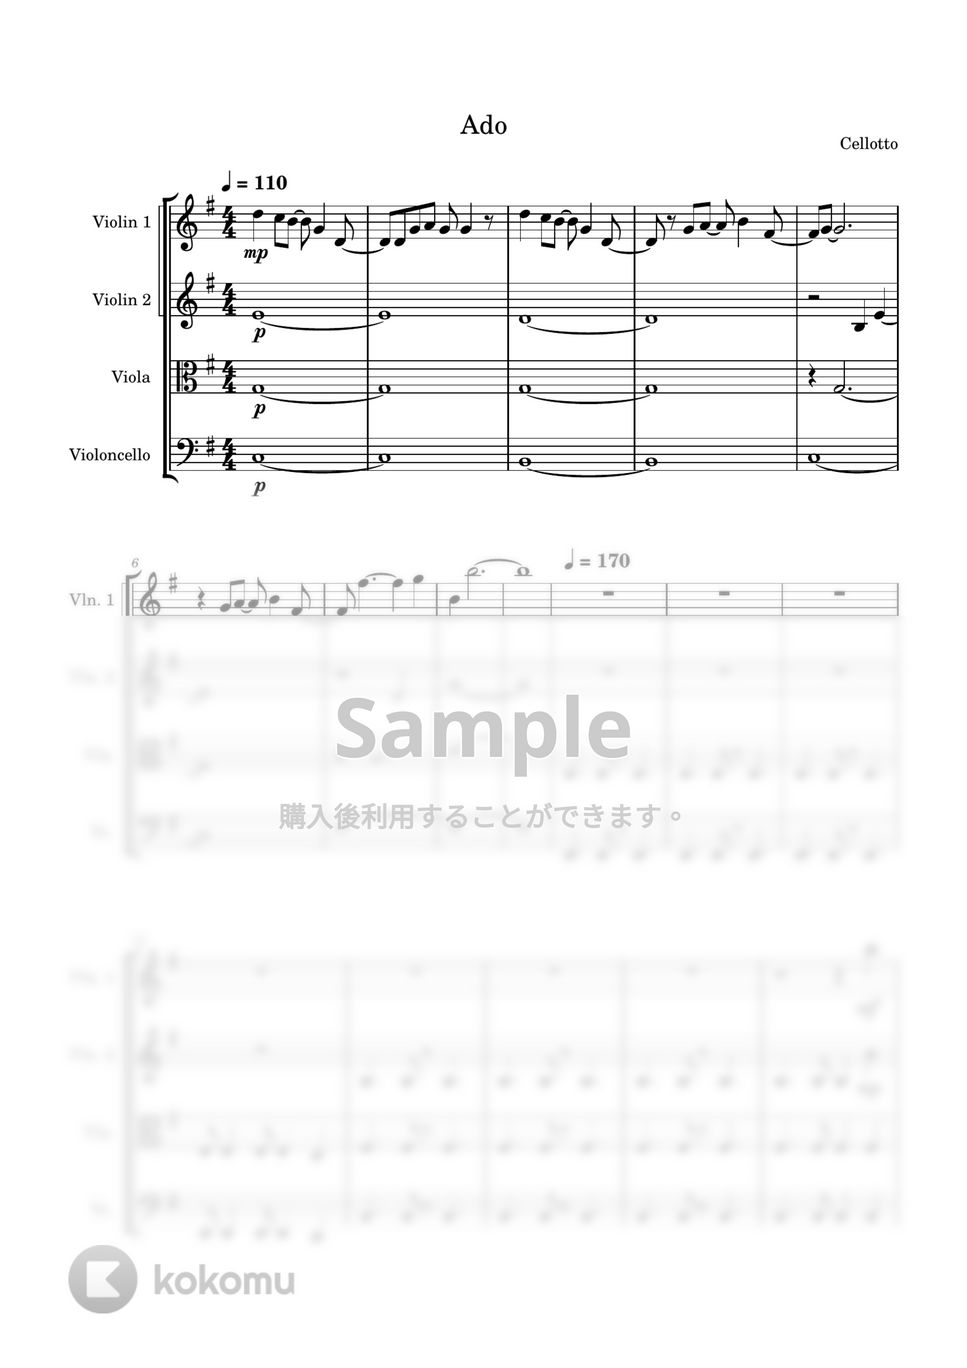 Ado - 新時代 (弦楽四重奏) by Cellotto